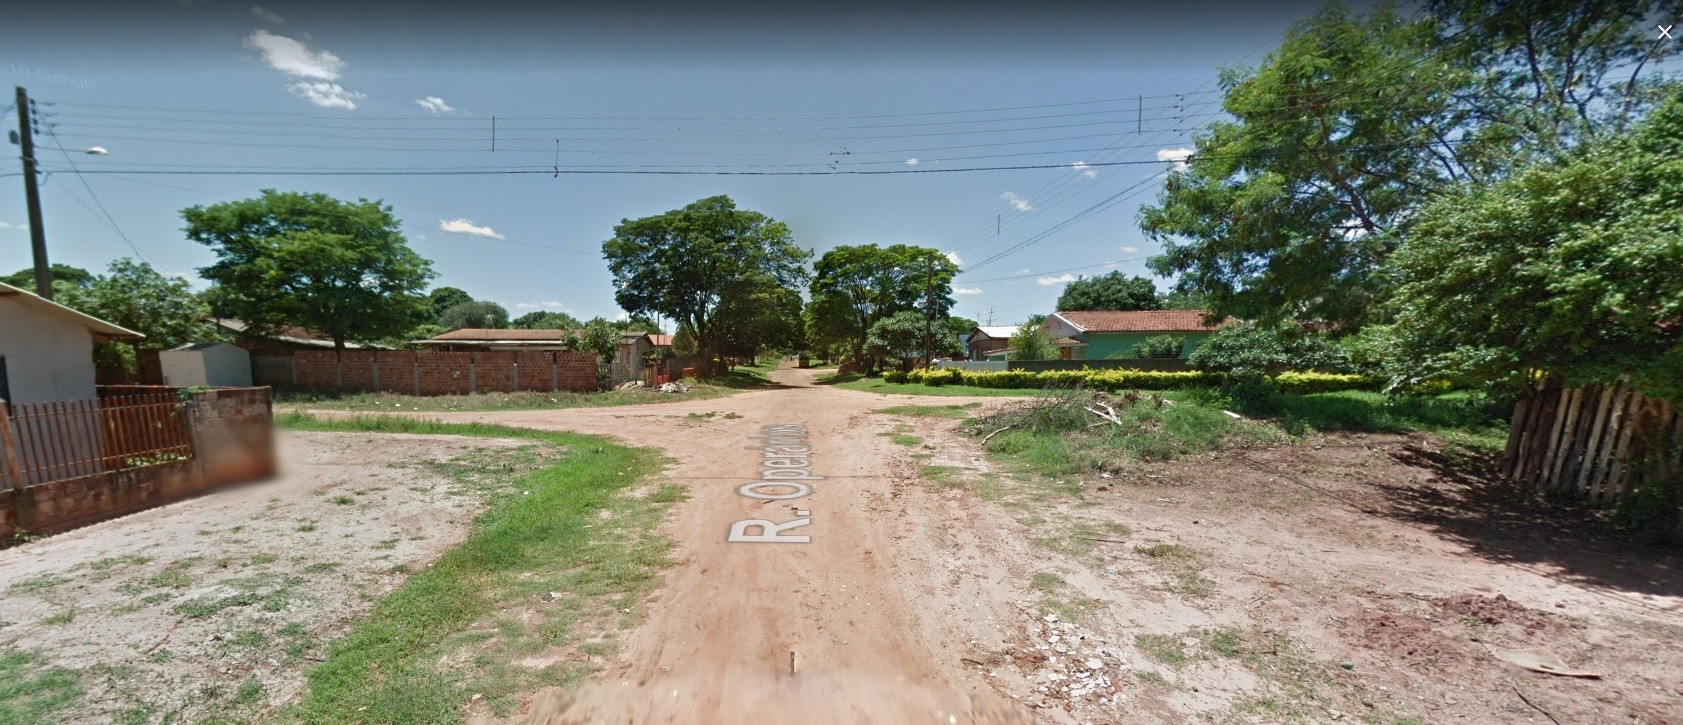 Foto do local do acidente - Google Street View